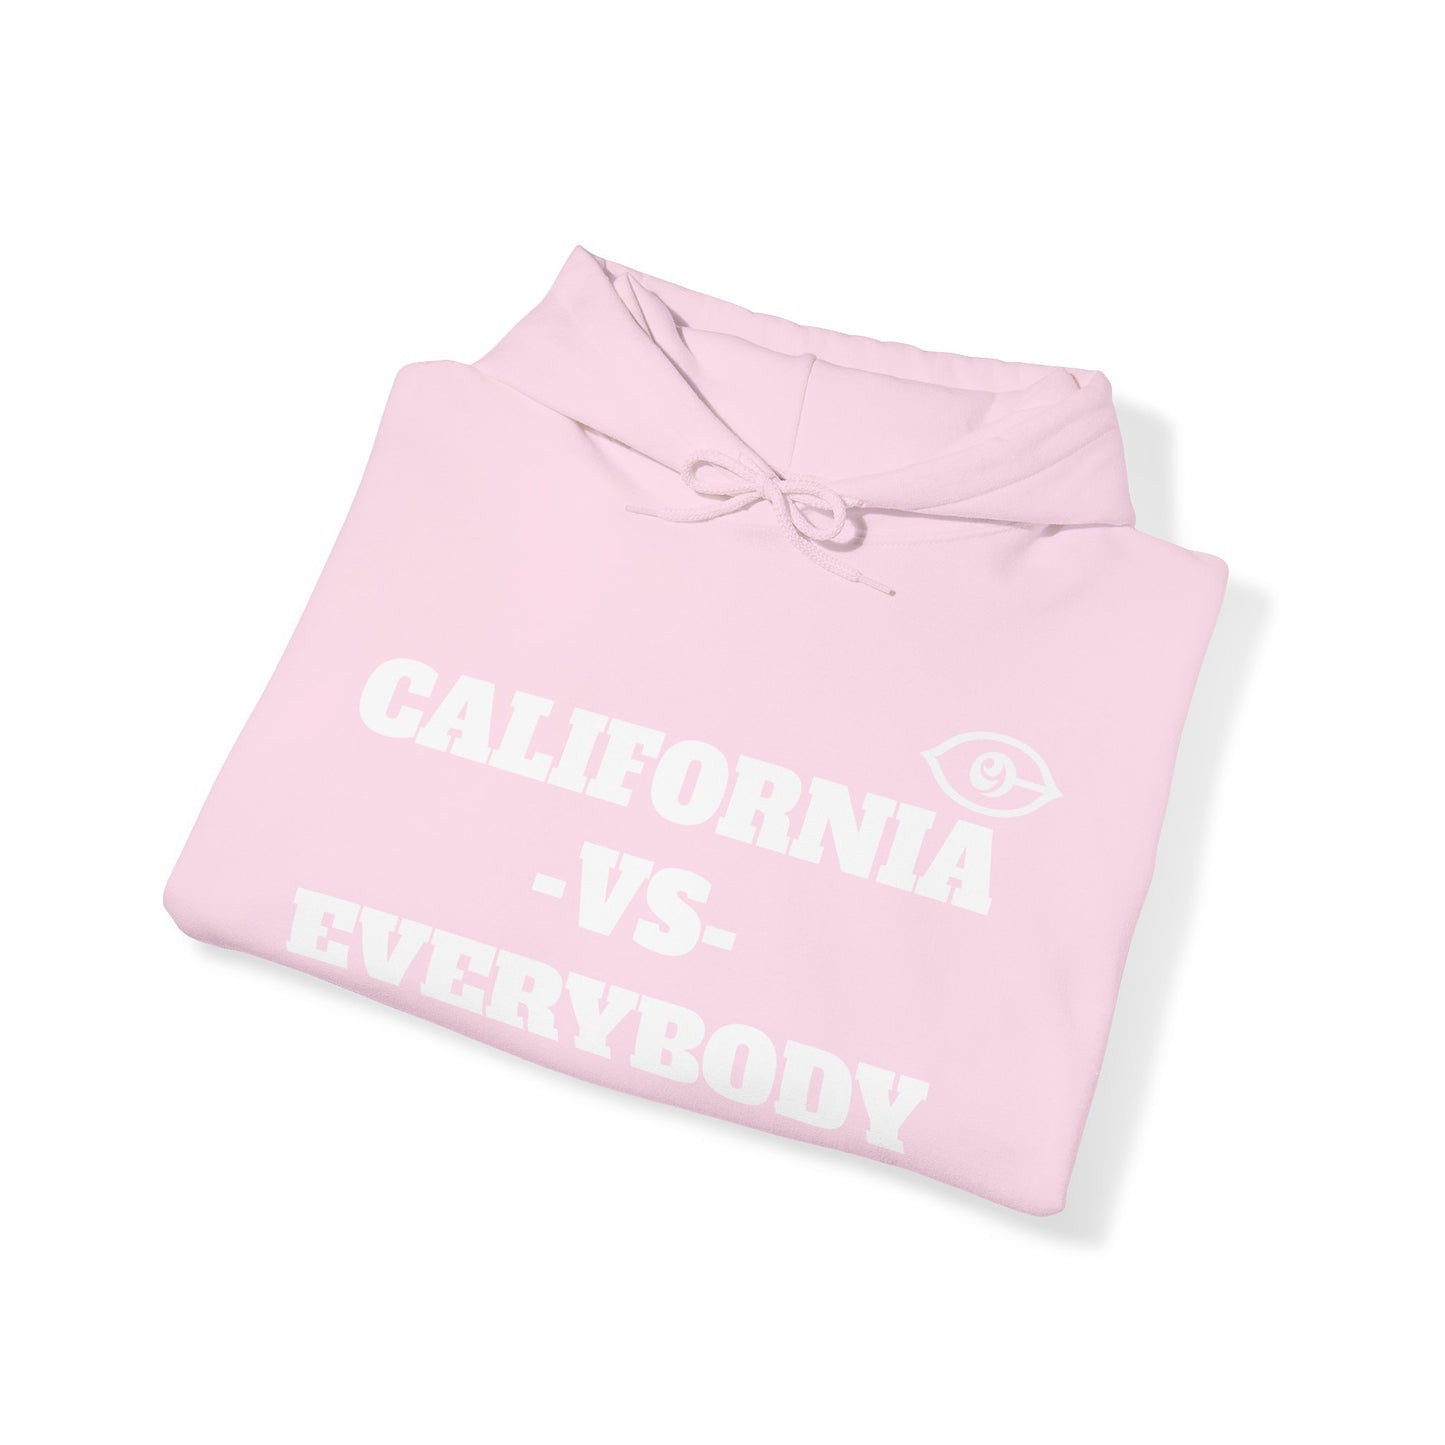 California VS Everybody Unisex Heavy Blend™ Hoodie Sweatshirt